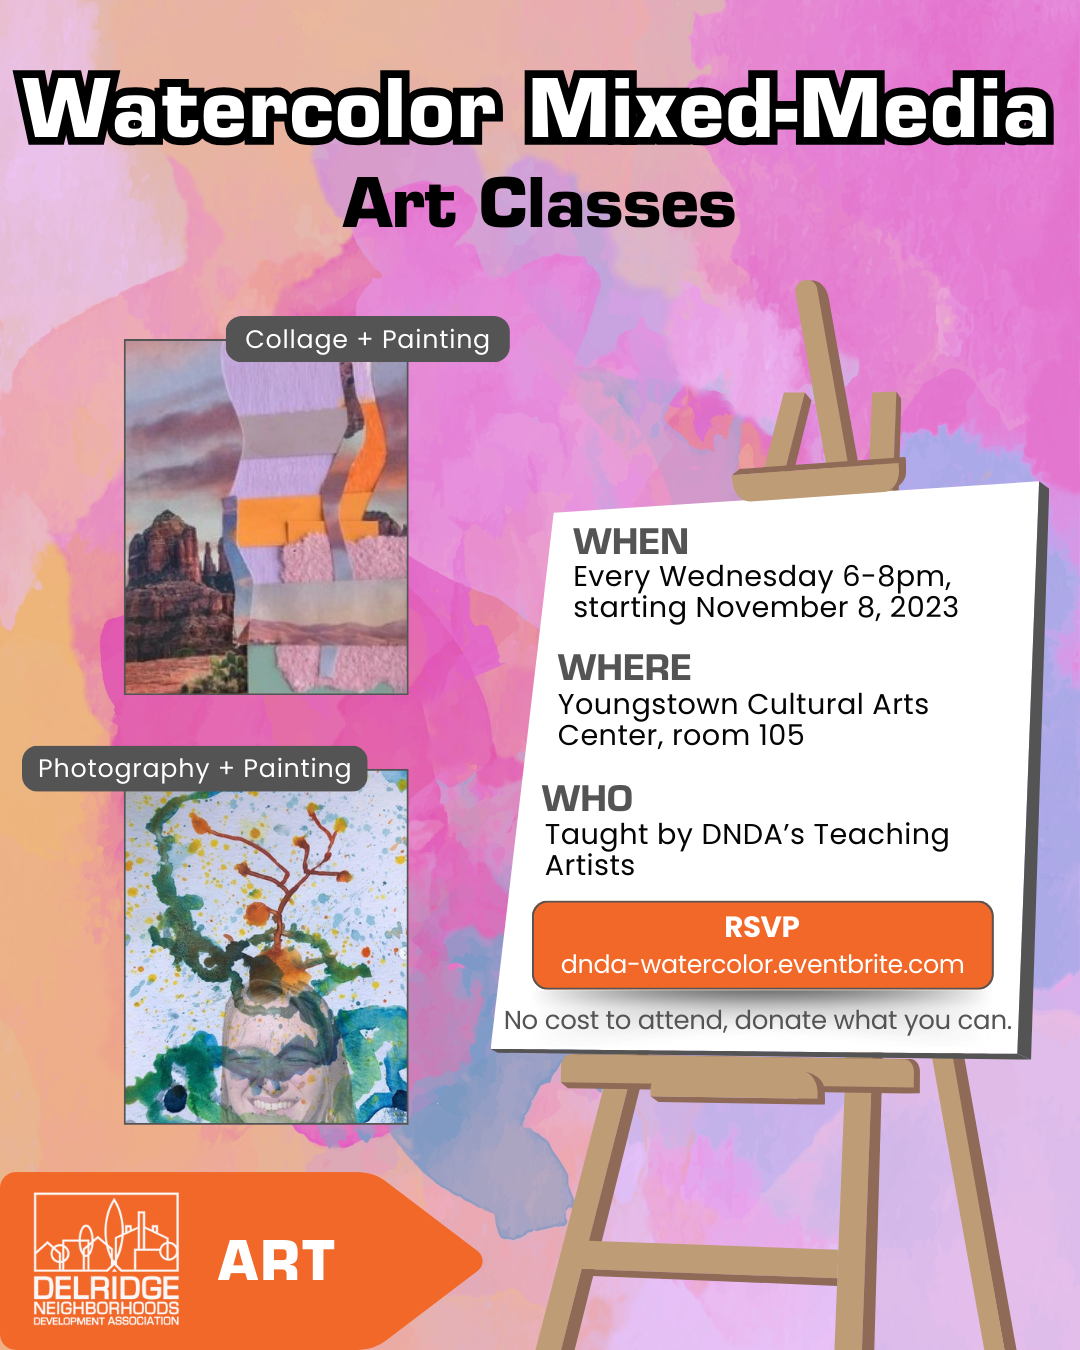 Watercolor Mixed-Media Art Classes Flyer